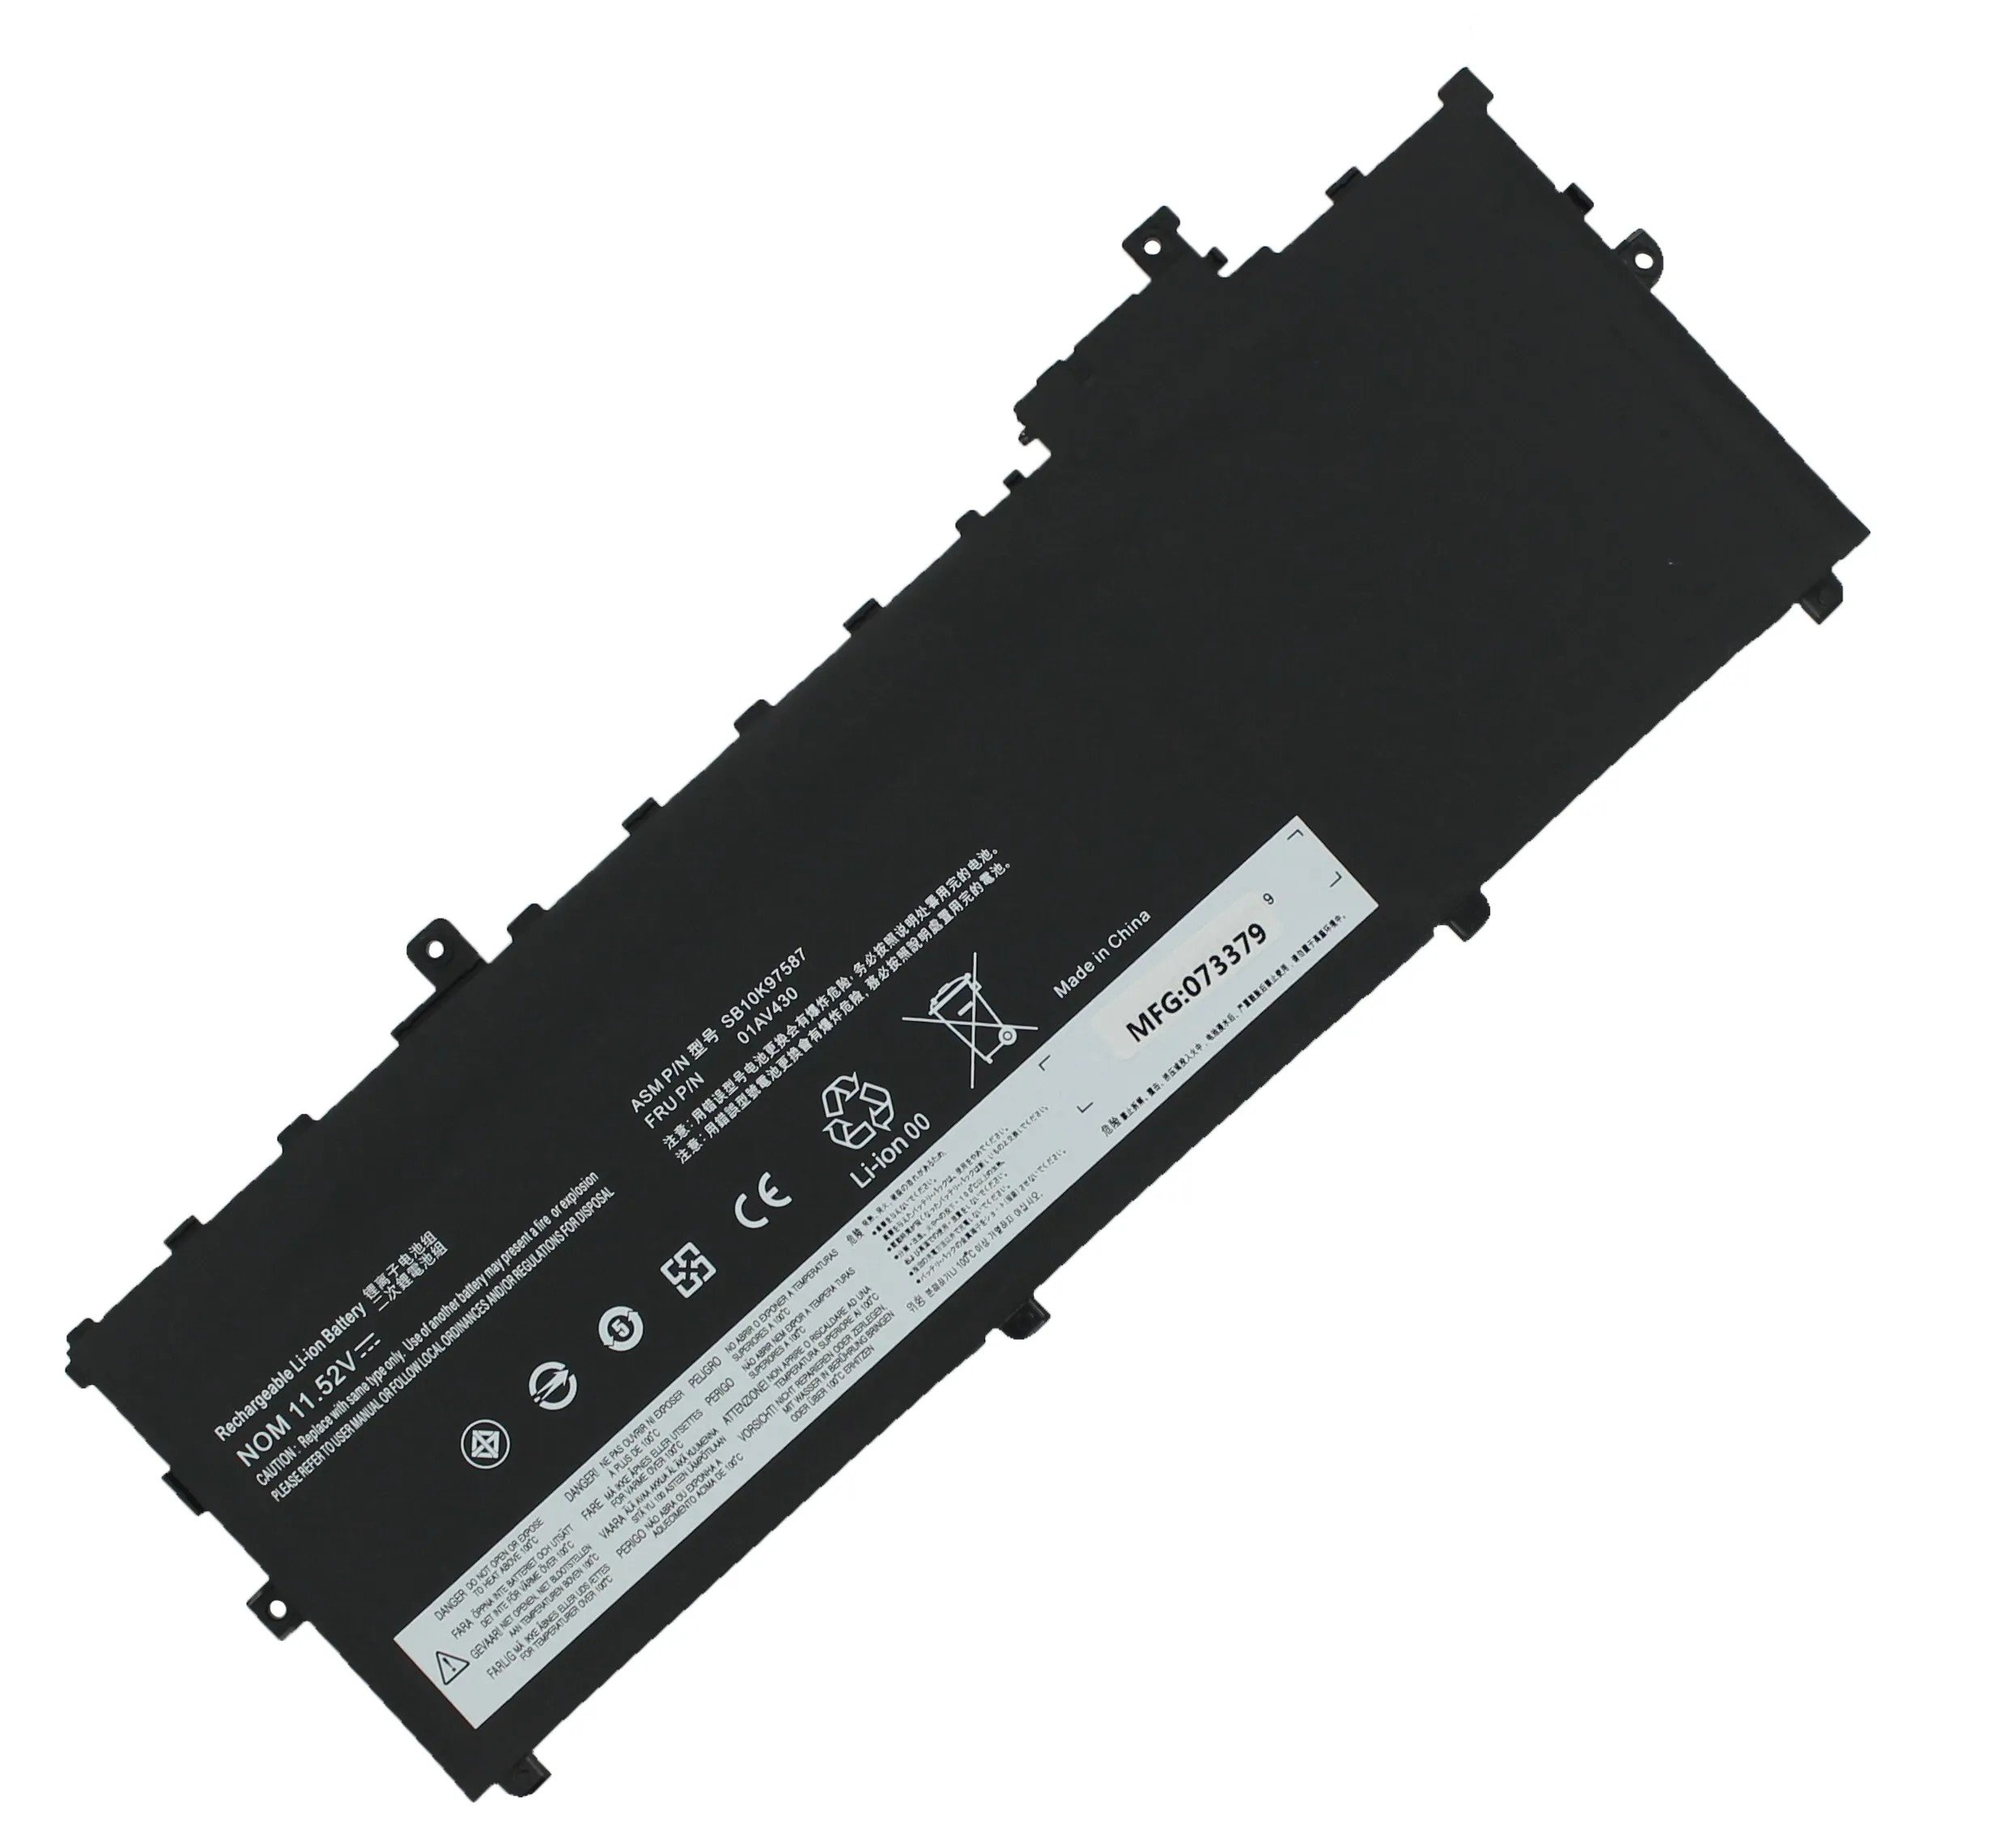 Akku 11.58 Volt, kompatibel X1 Li-Pol, Lenovo AGI ThinkPad mit mAh 4800 Li-Pol Notebookakku, 20HQS01S00